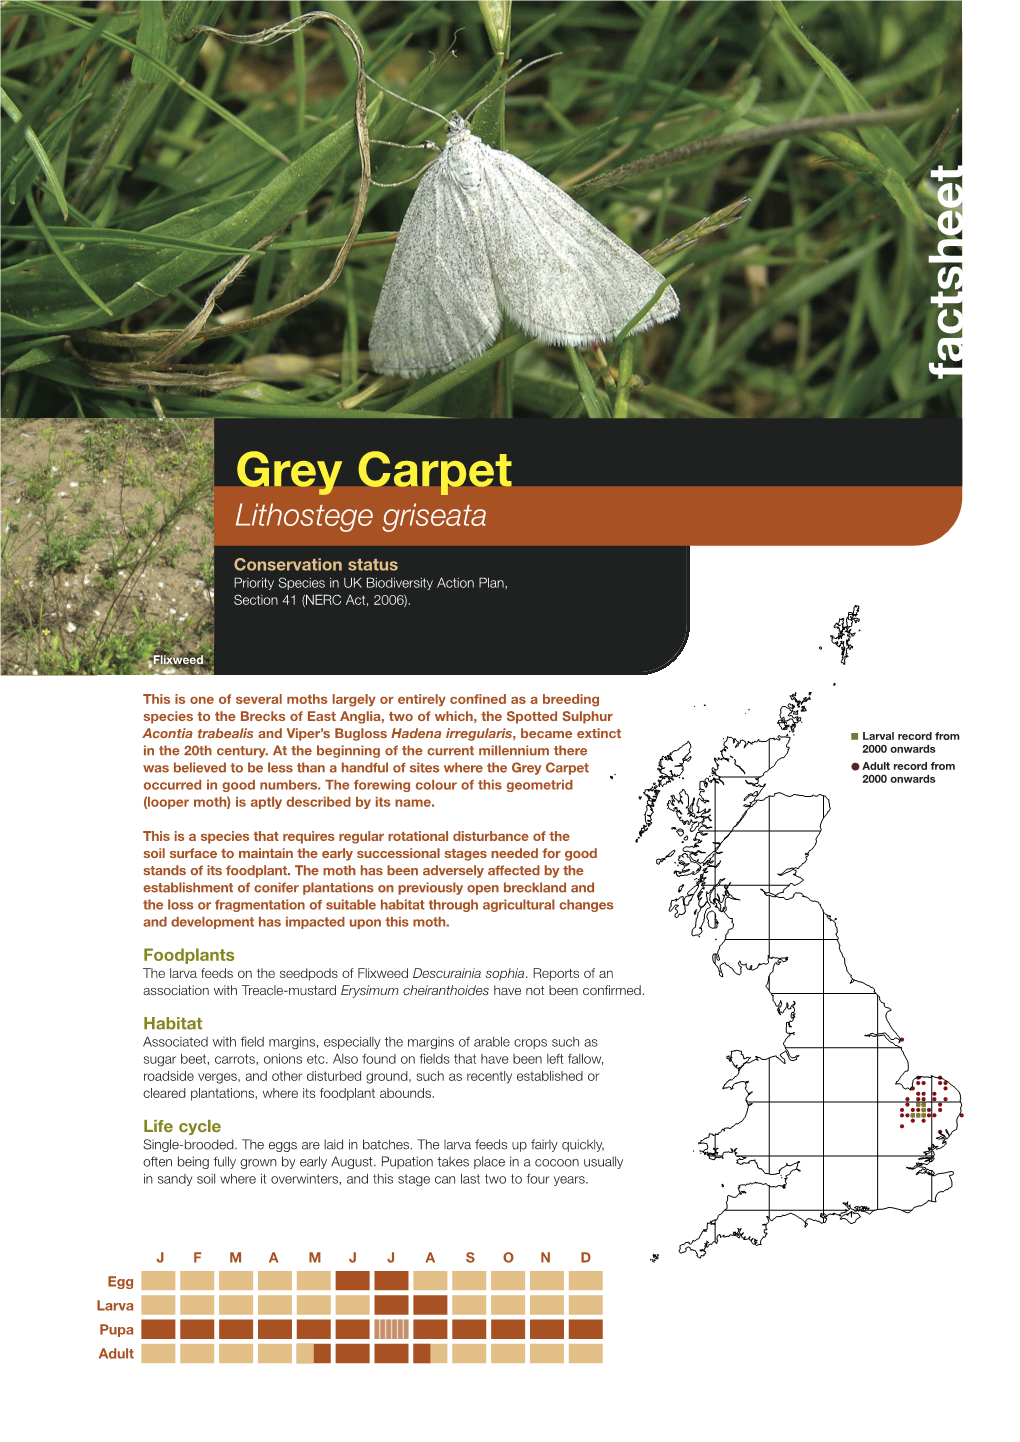 Grey Carpet Priority Species Factsheet